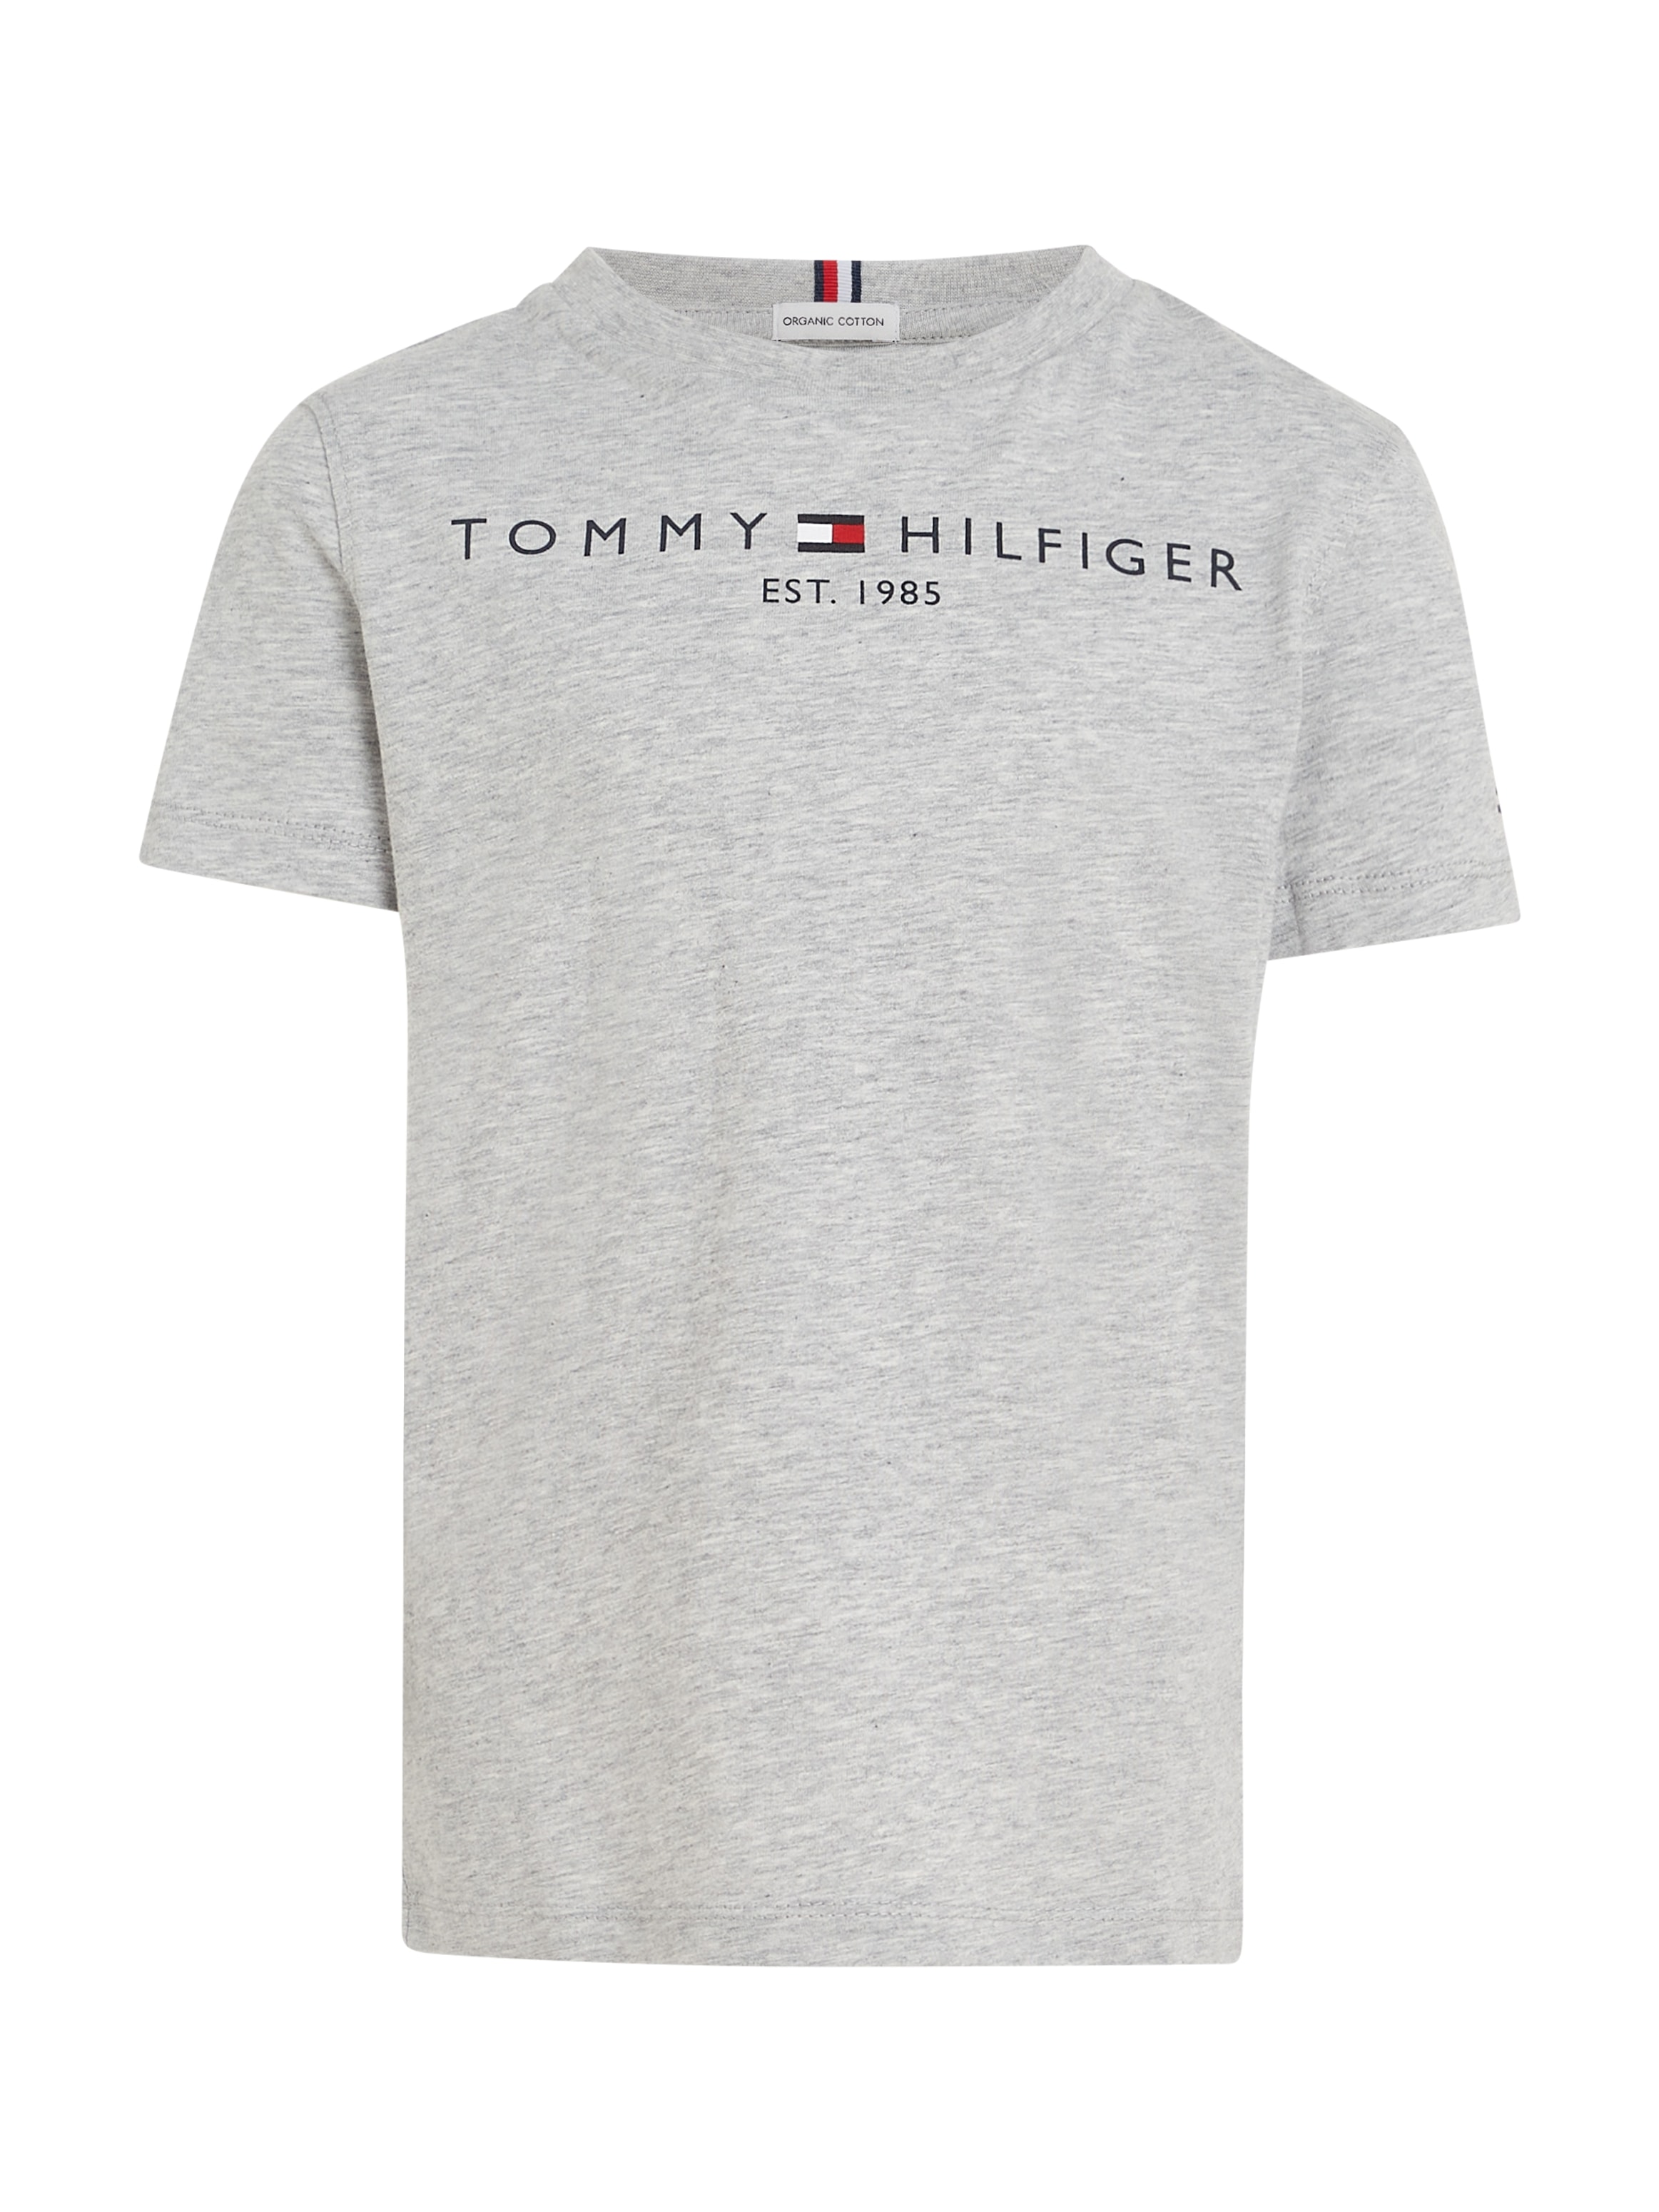 Tommy Hilfiger T-Shirt »ESSENTIAL Junior Jungen Kinder MiniMe,für und Kids TEE«, Mädchen bestellen bei OTTO